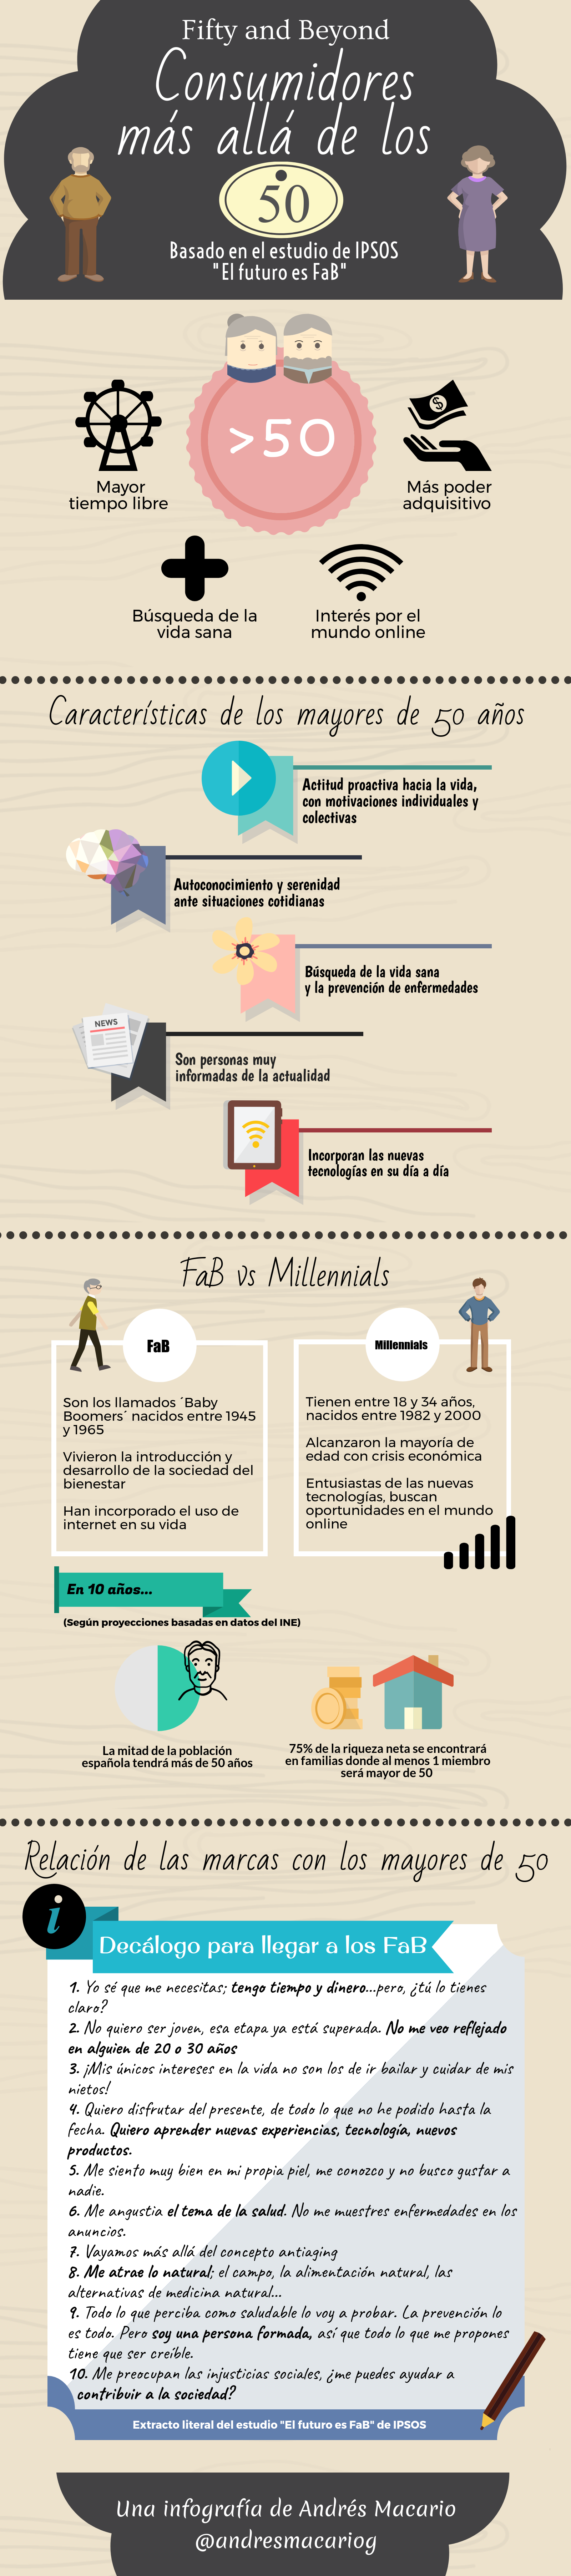 Consumidores más allá de los 50 - Infografía Andrés Macario